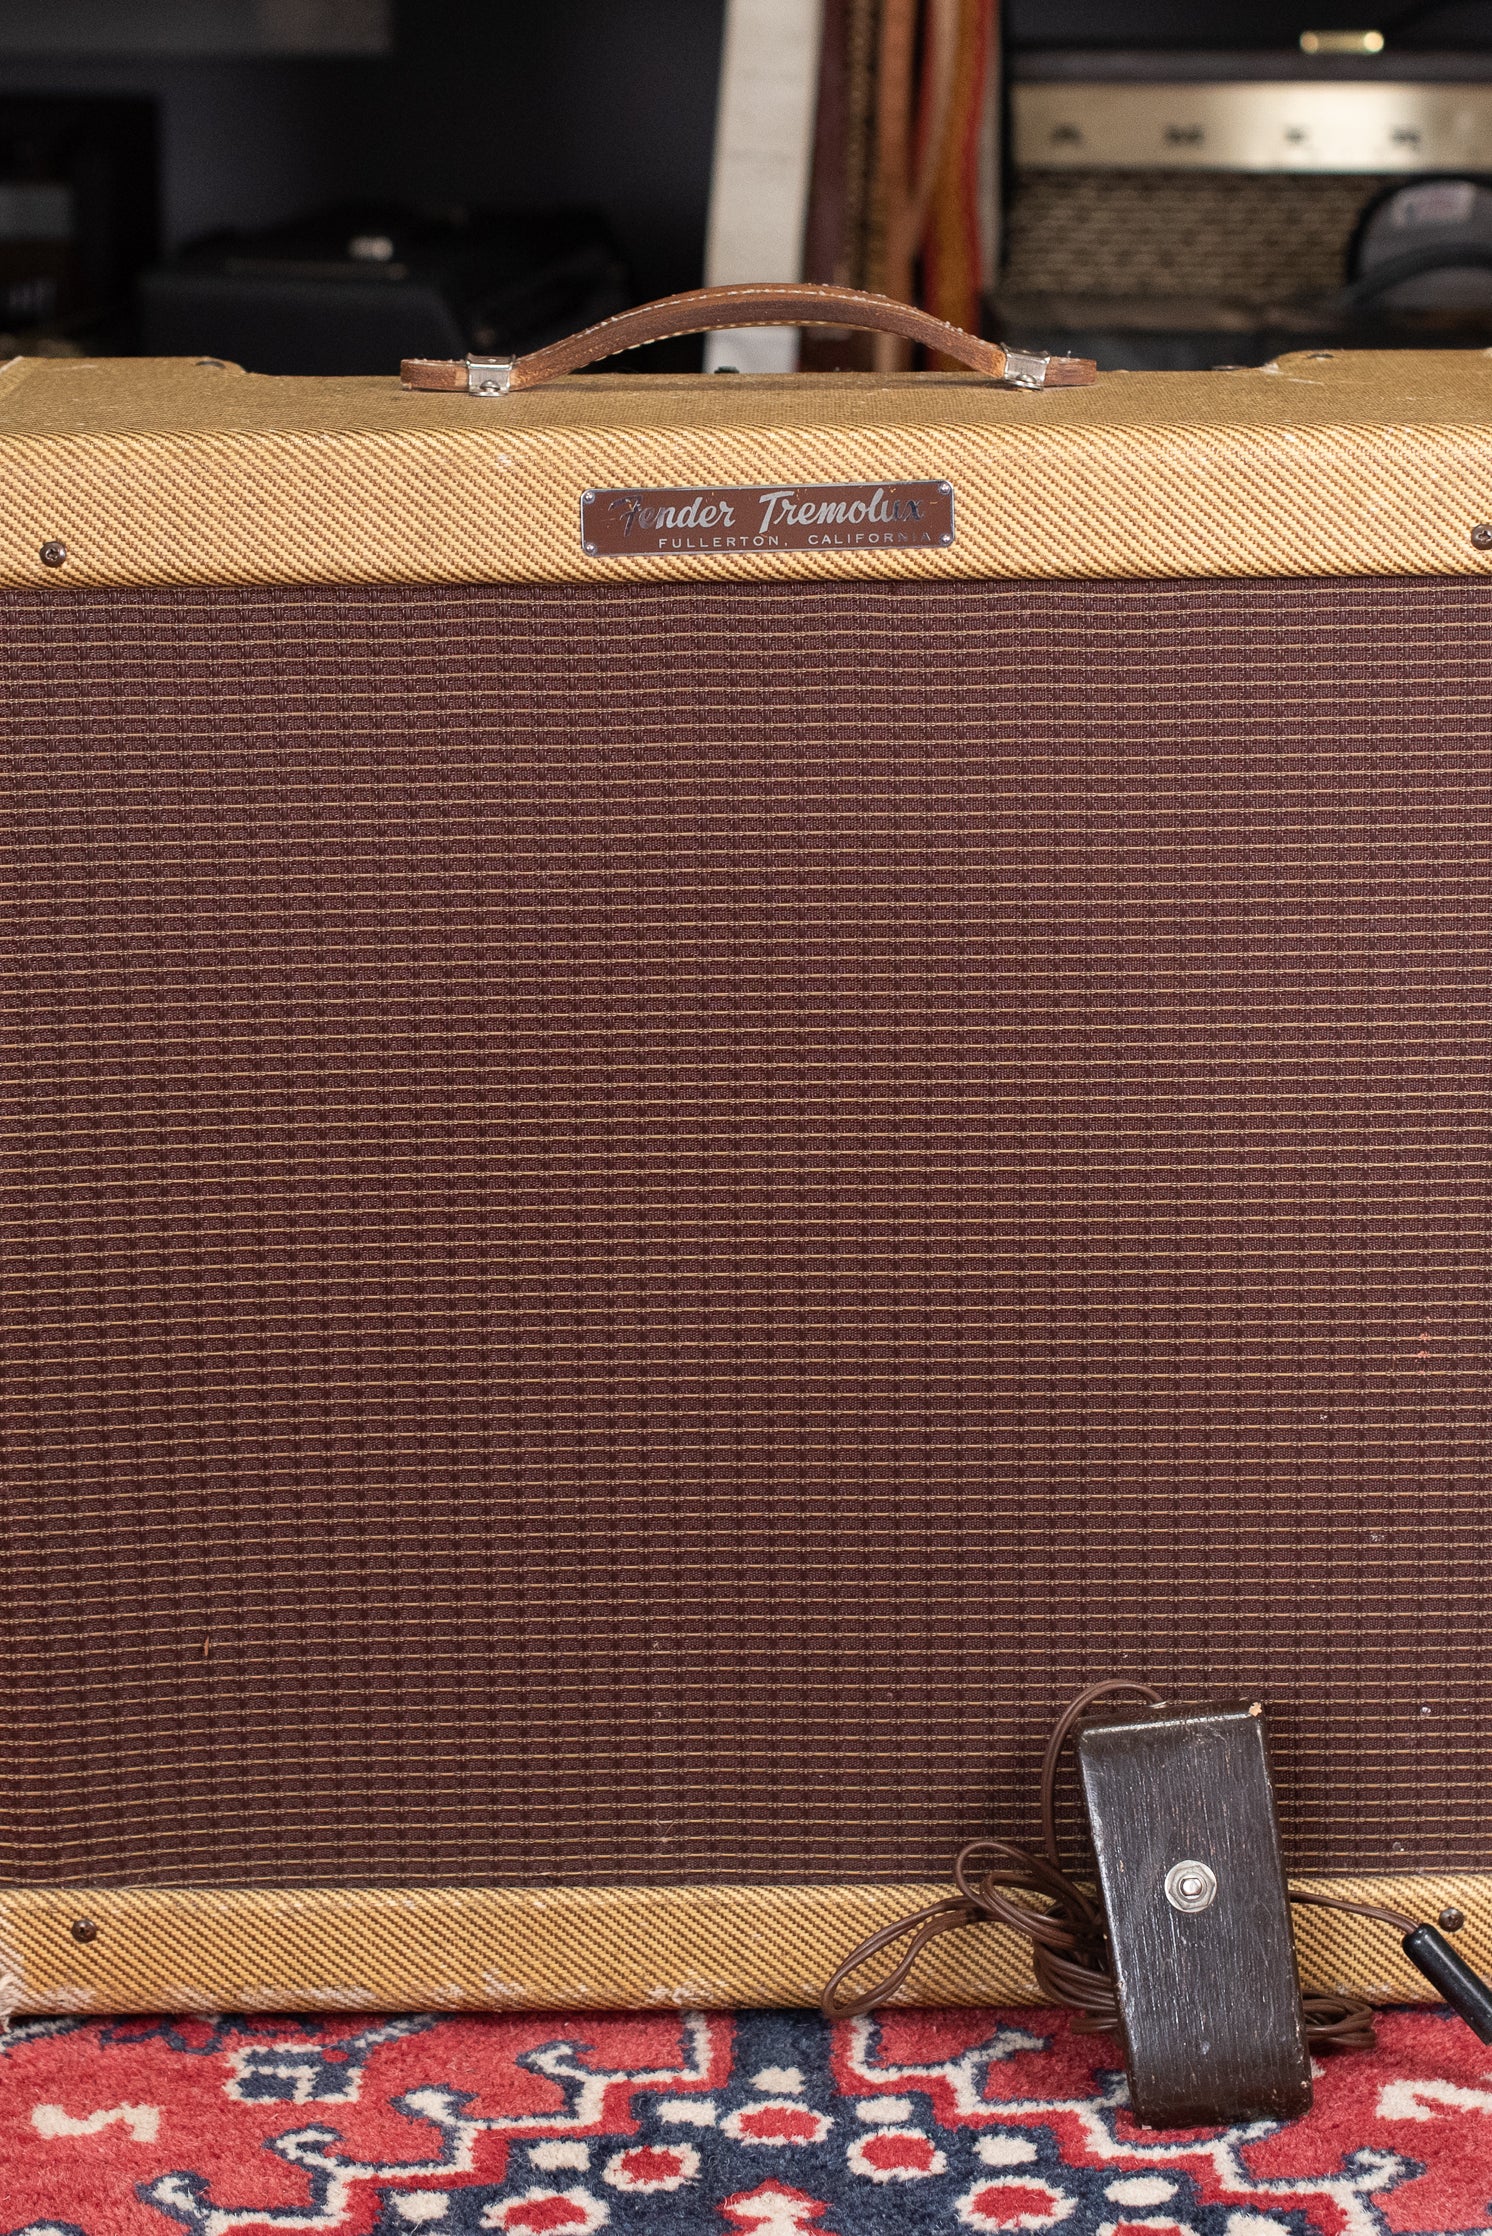 1950s Fender Tweed Tremolux